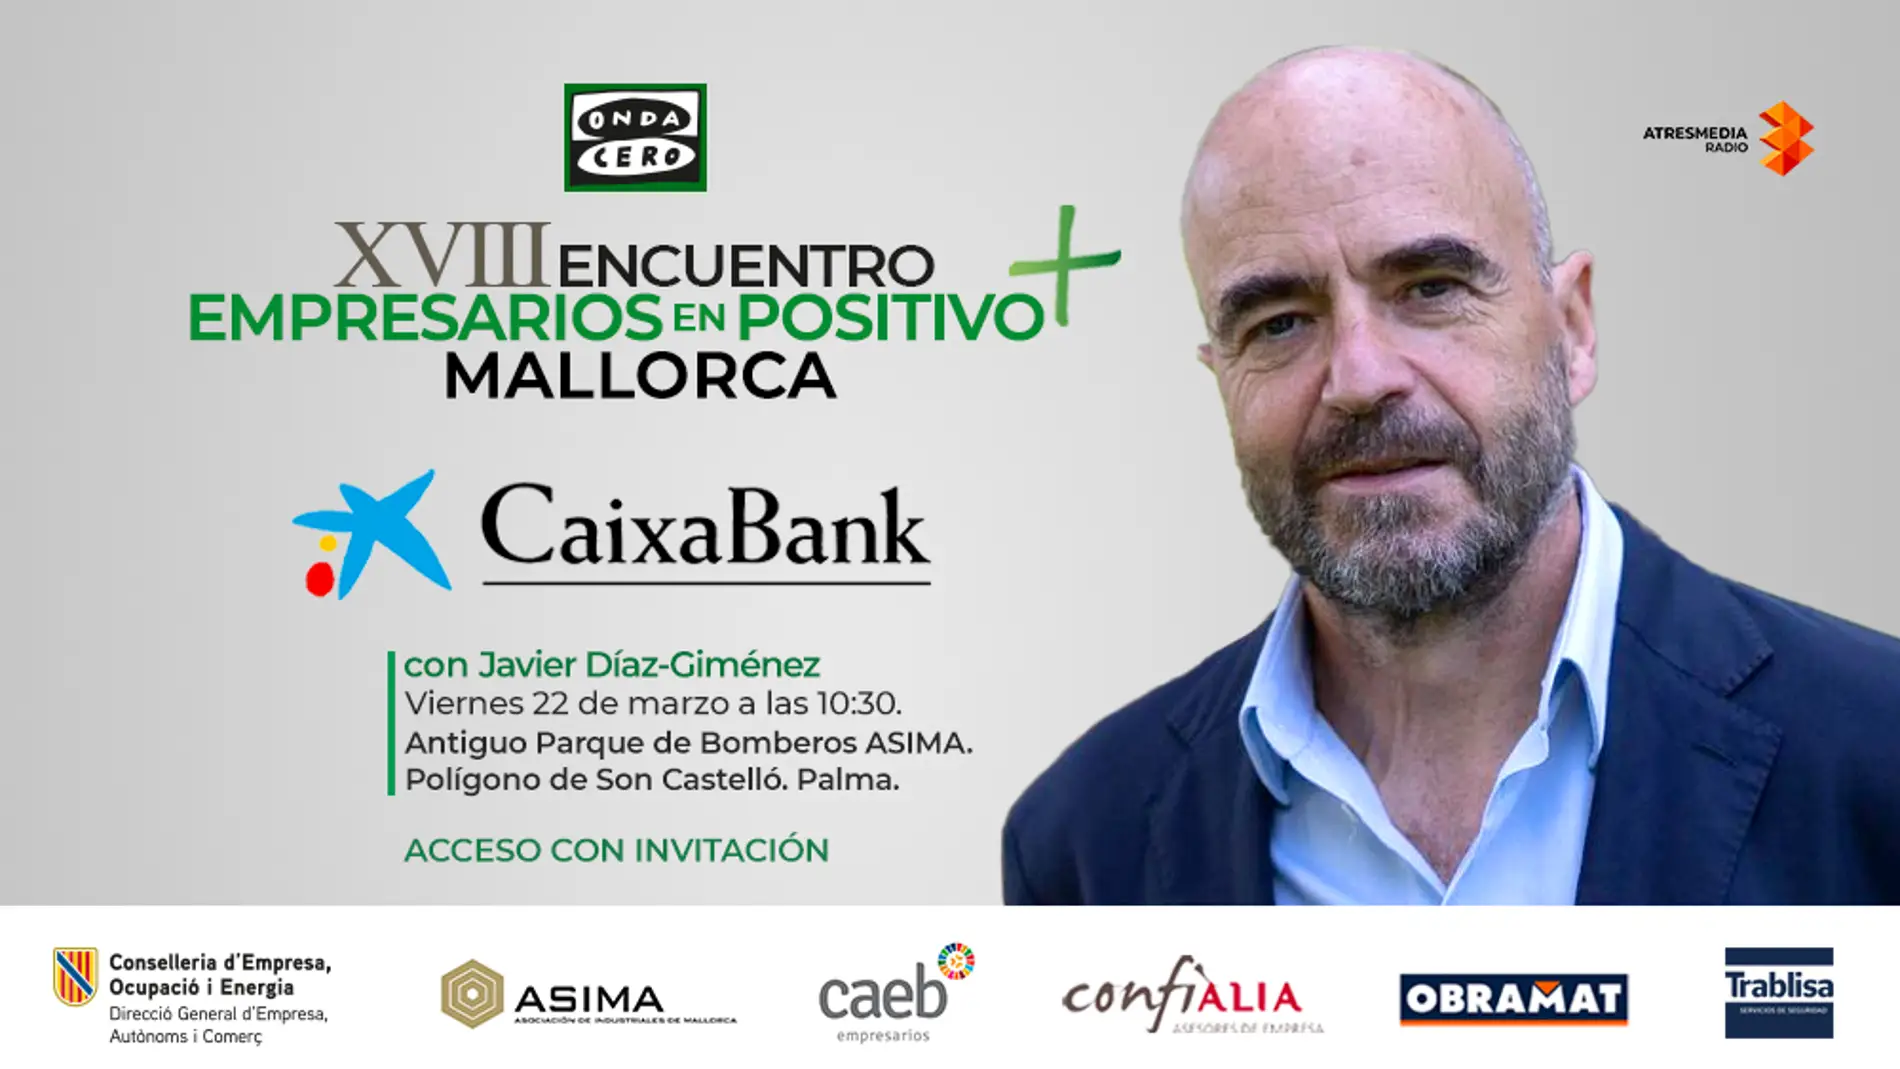 El mediático profesor de Economía Javier Díaz-Giménez será el ponente invitado en el XVIII Encuentro de Empresarios en Positivo